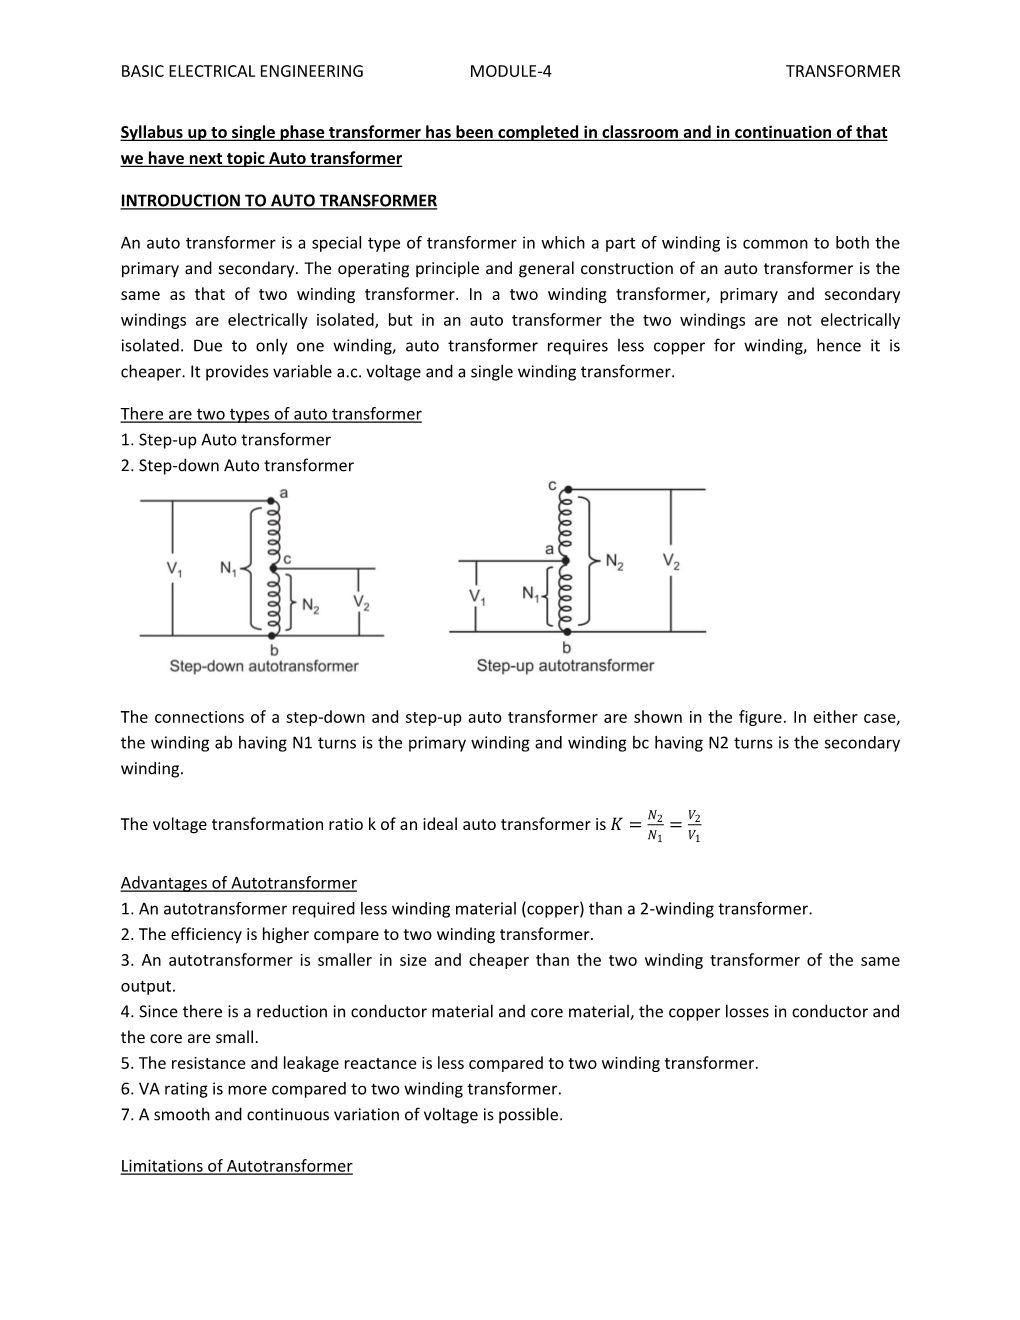 Basic Electrical Engineering Module-4 Transformer